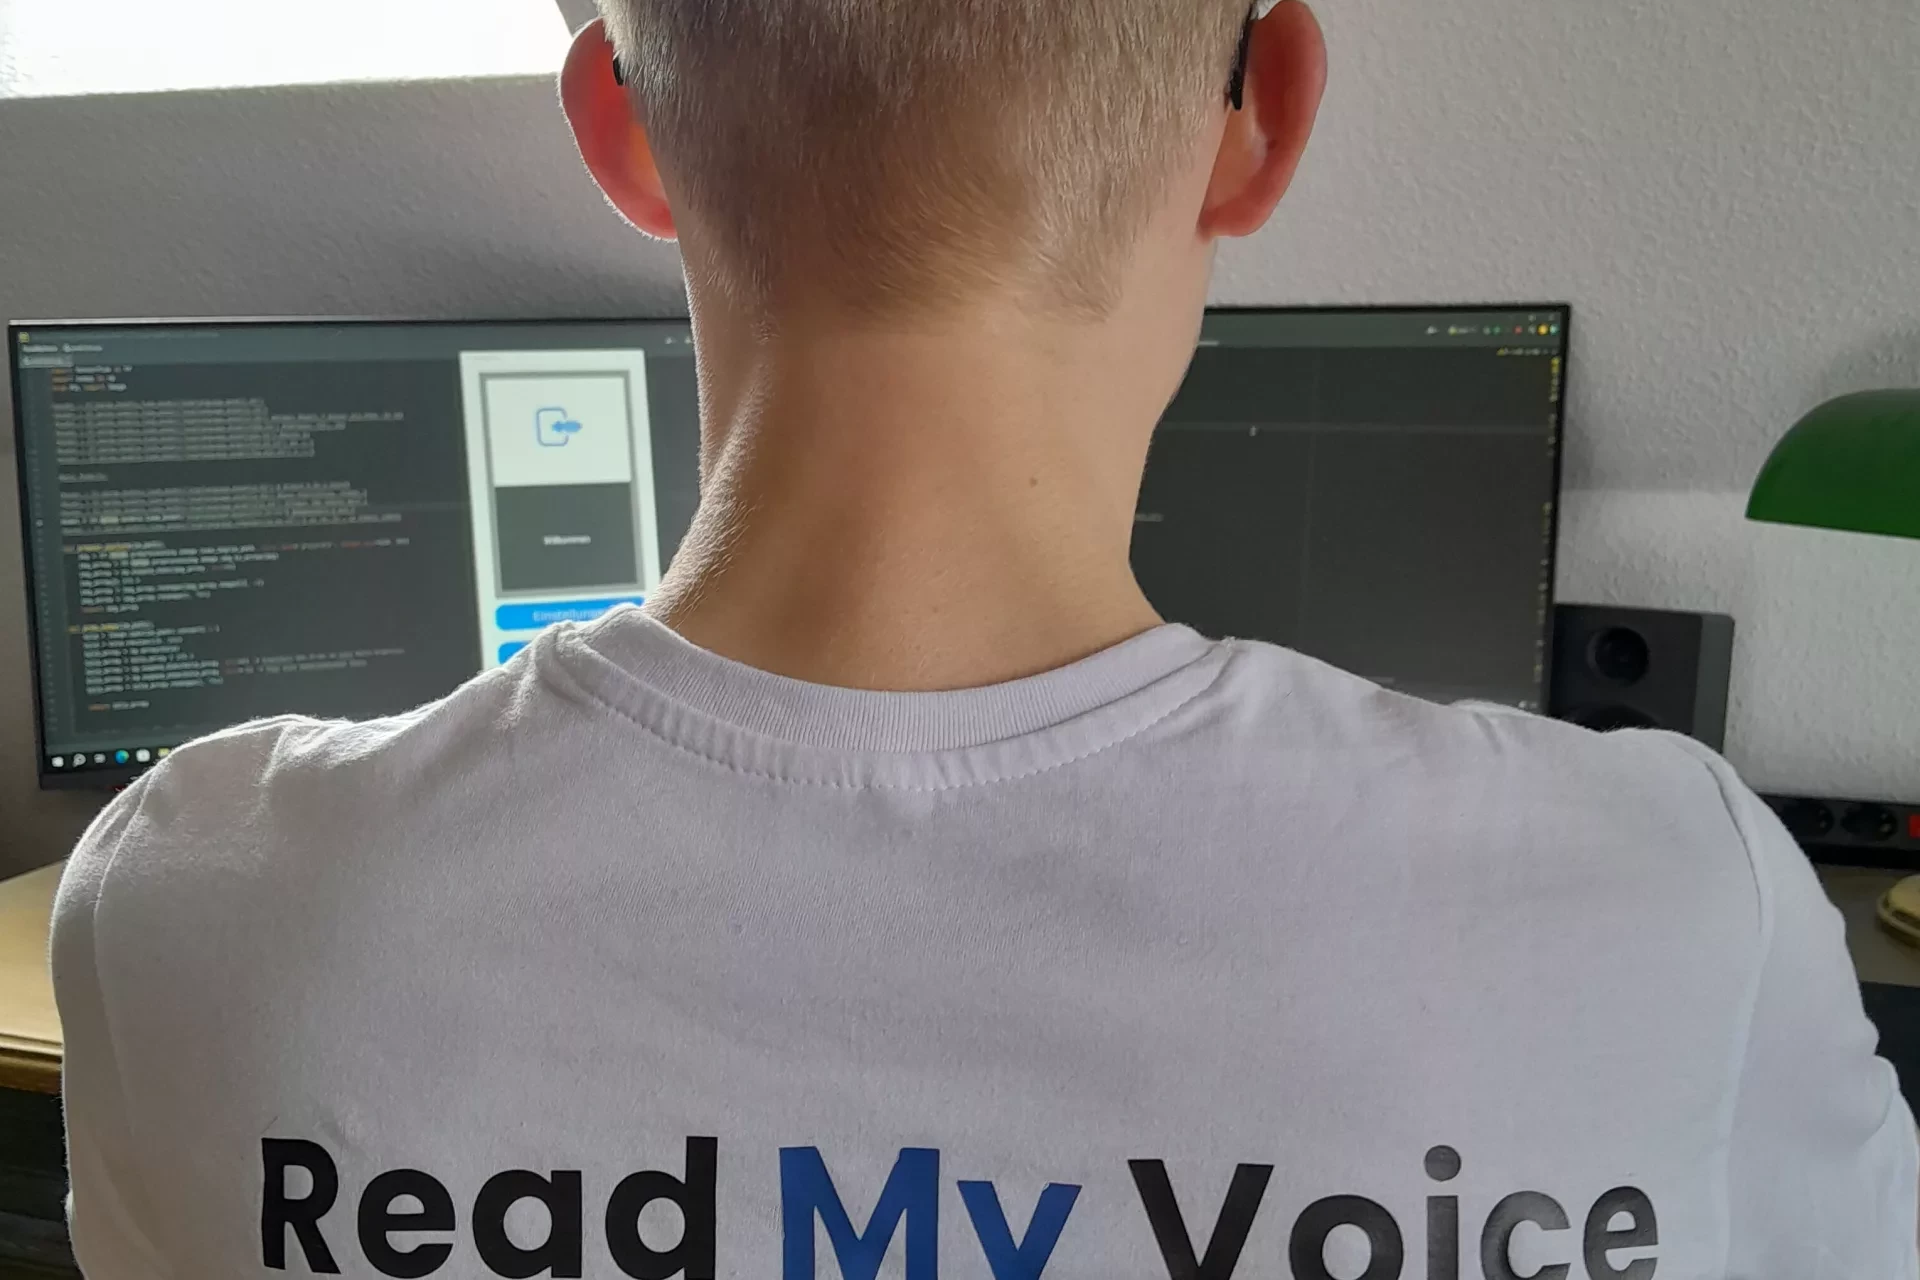 Der Gründer Mika Danner vor seinem Computer von hinten fotografiert. Auf dem Rücken seines T-Shirts ist das Logo seines Startups Read my Voice zu sehen.